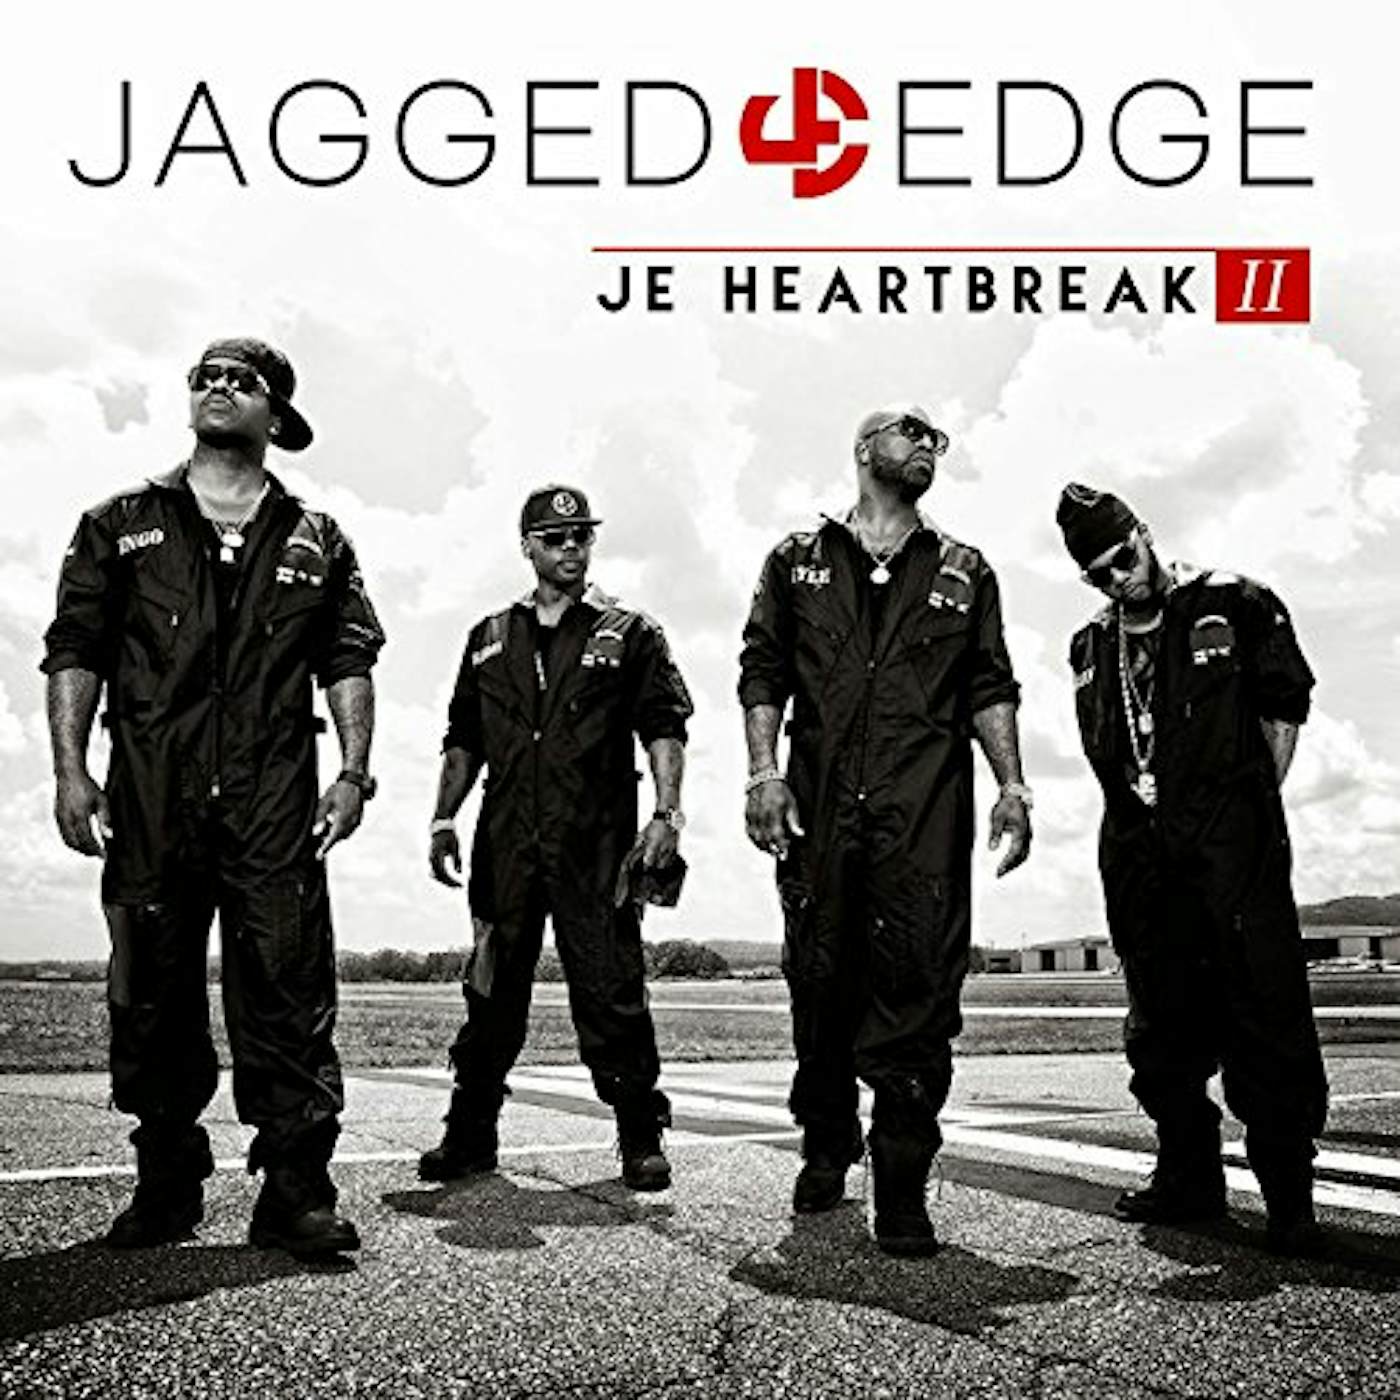 Jagged Edge JE HEARTBREAK II CD